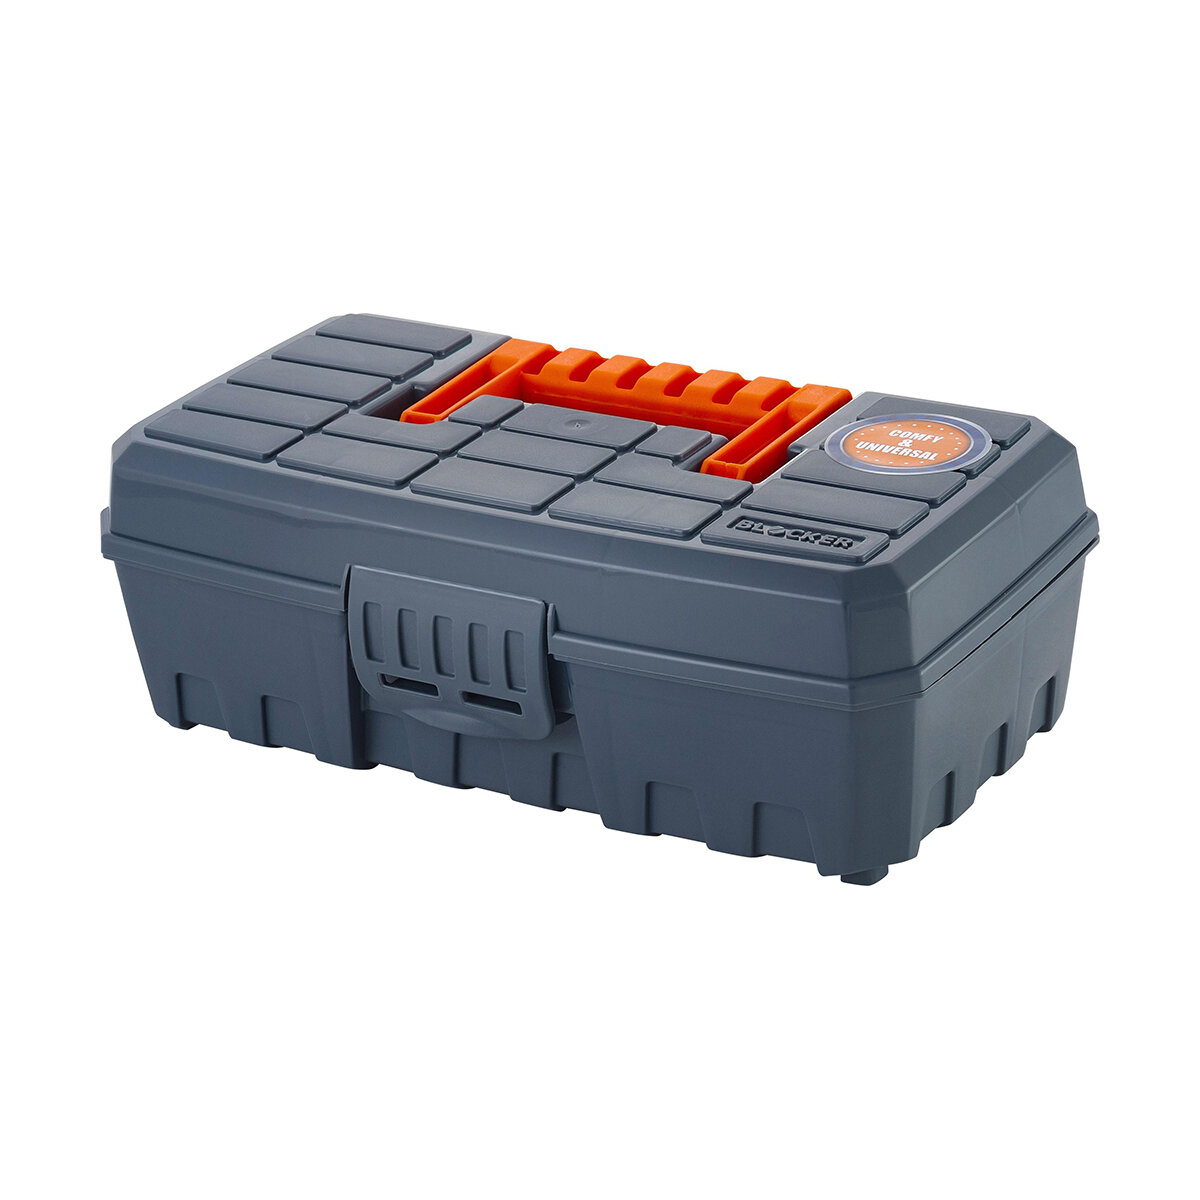 Органайзер для хранения Blocker Techniker, с отсеками, 23,6 x 13,1 x 8,4 см, серо-оранжевый